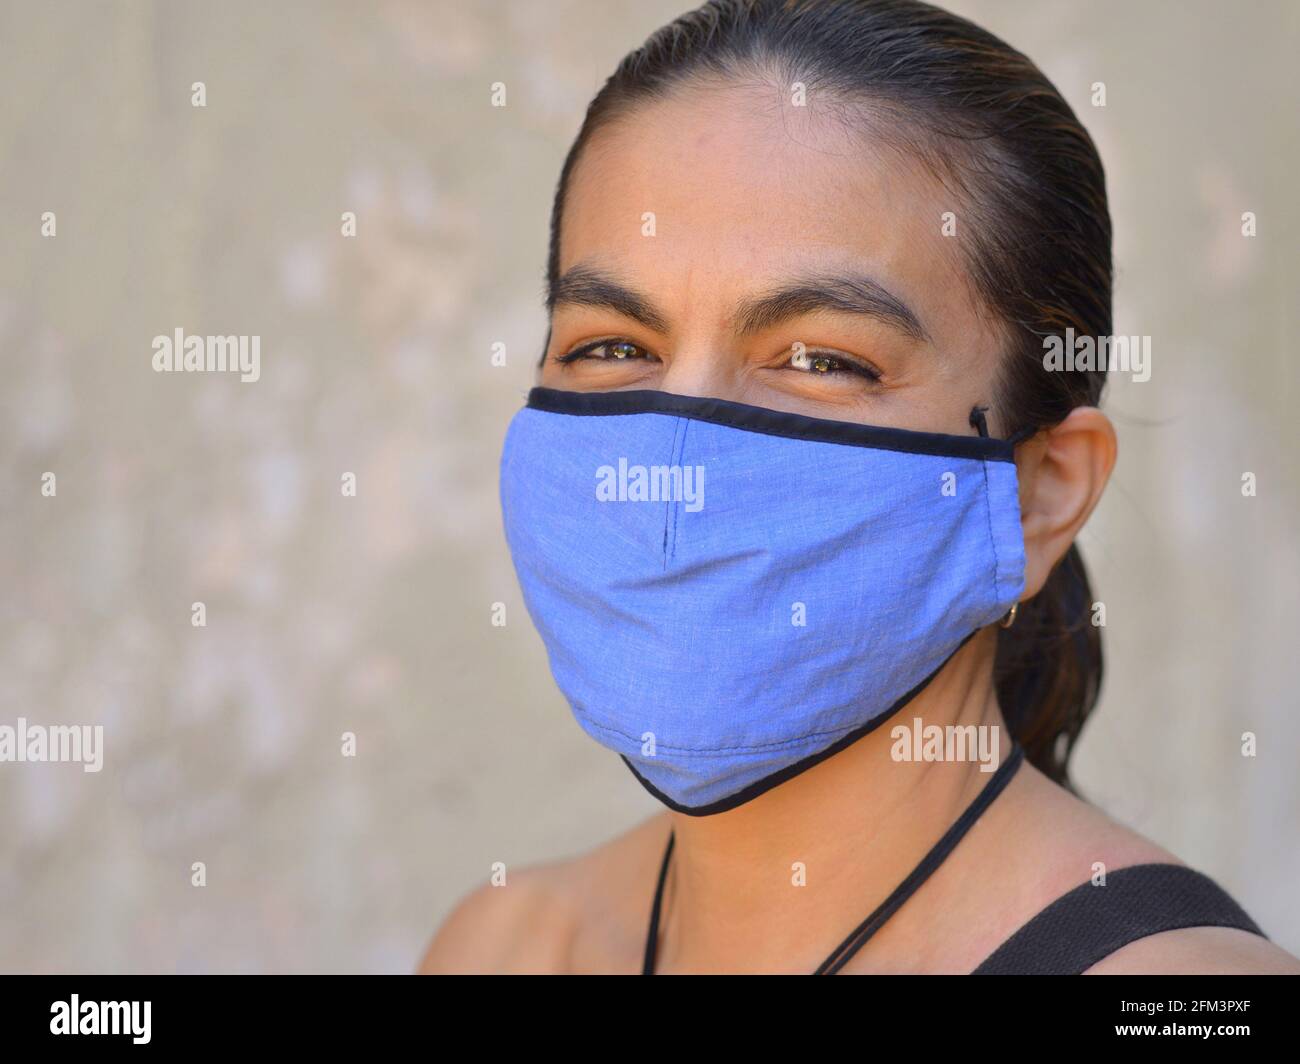 Una donna messicana ricca di Latina con occhi sorridenti indossa una maschera facciale non medica blu durante la pandemia del coronavirus globale e pone per la telecamera. Foto Stock